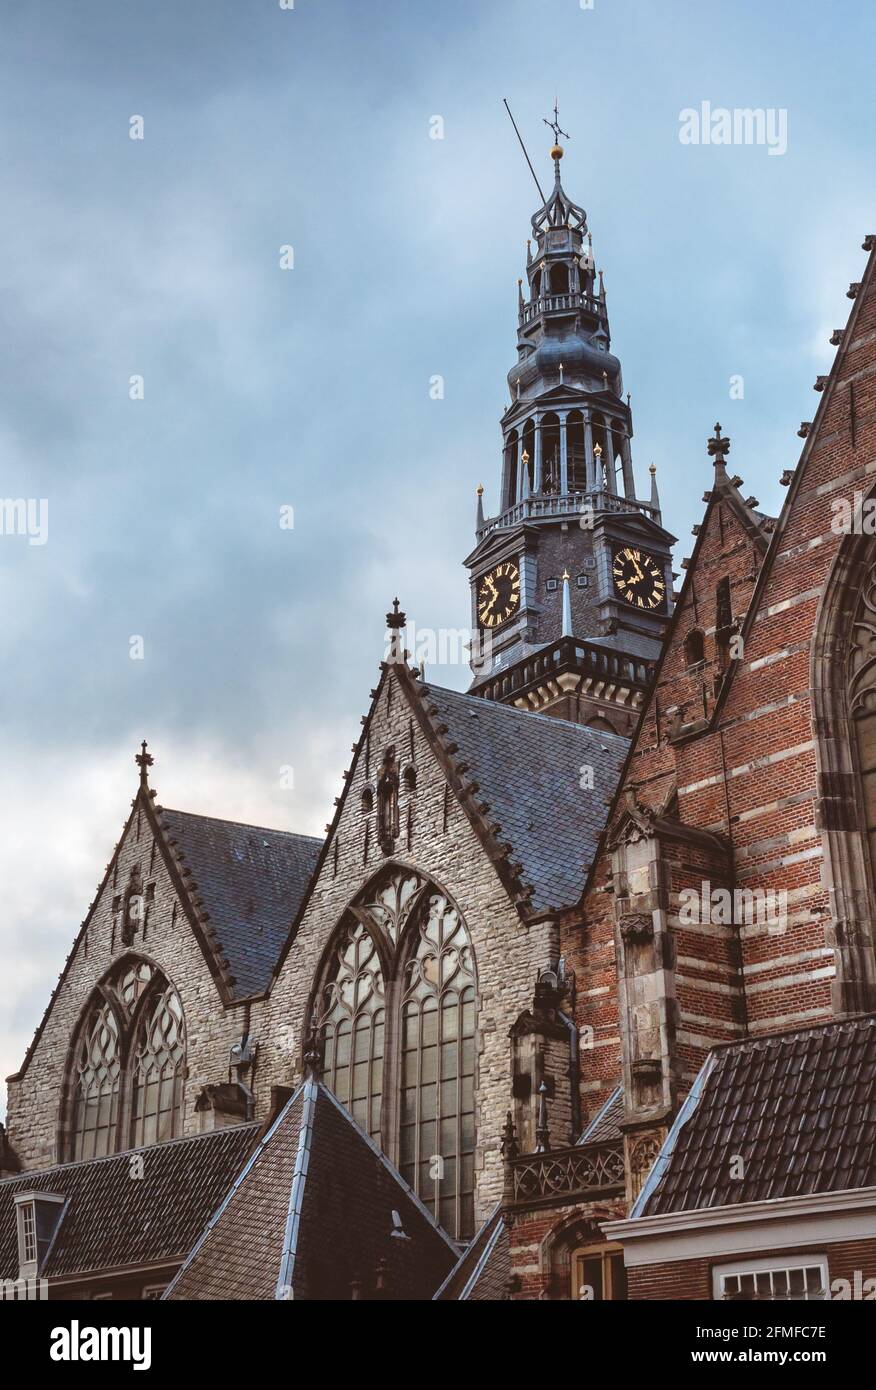 Finestre gotiche e tetti in tegole della chiesa Calvinista Oude Kerk e vecchio campanile con orologio al cielo nuvoloso. Architettura cristiana antica e churc Foto Stock